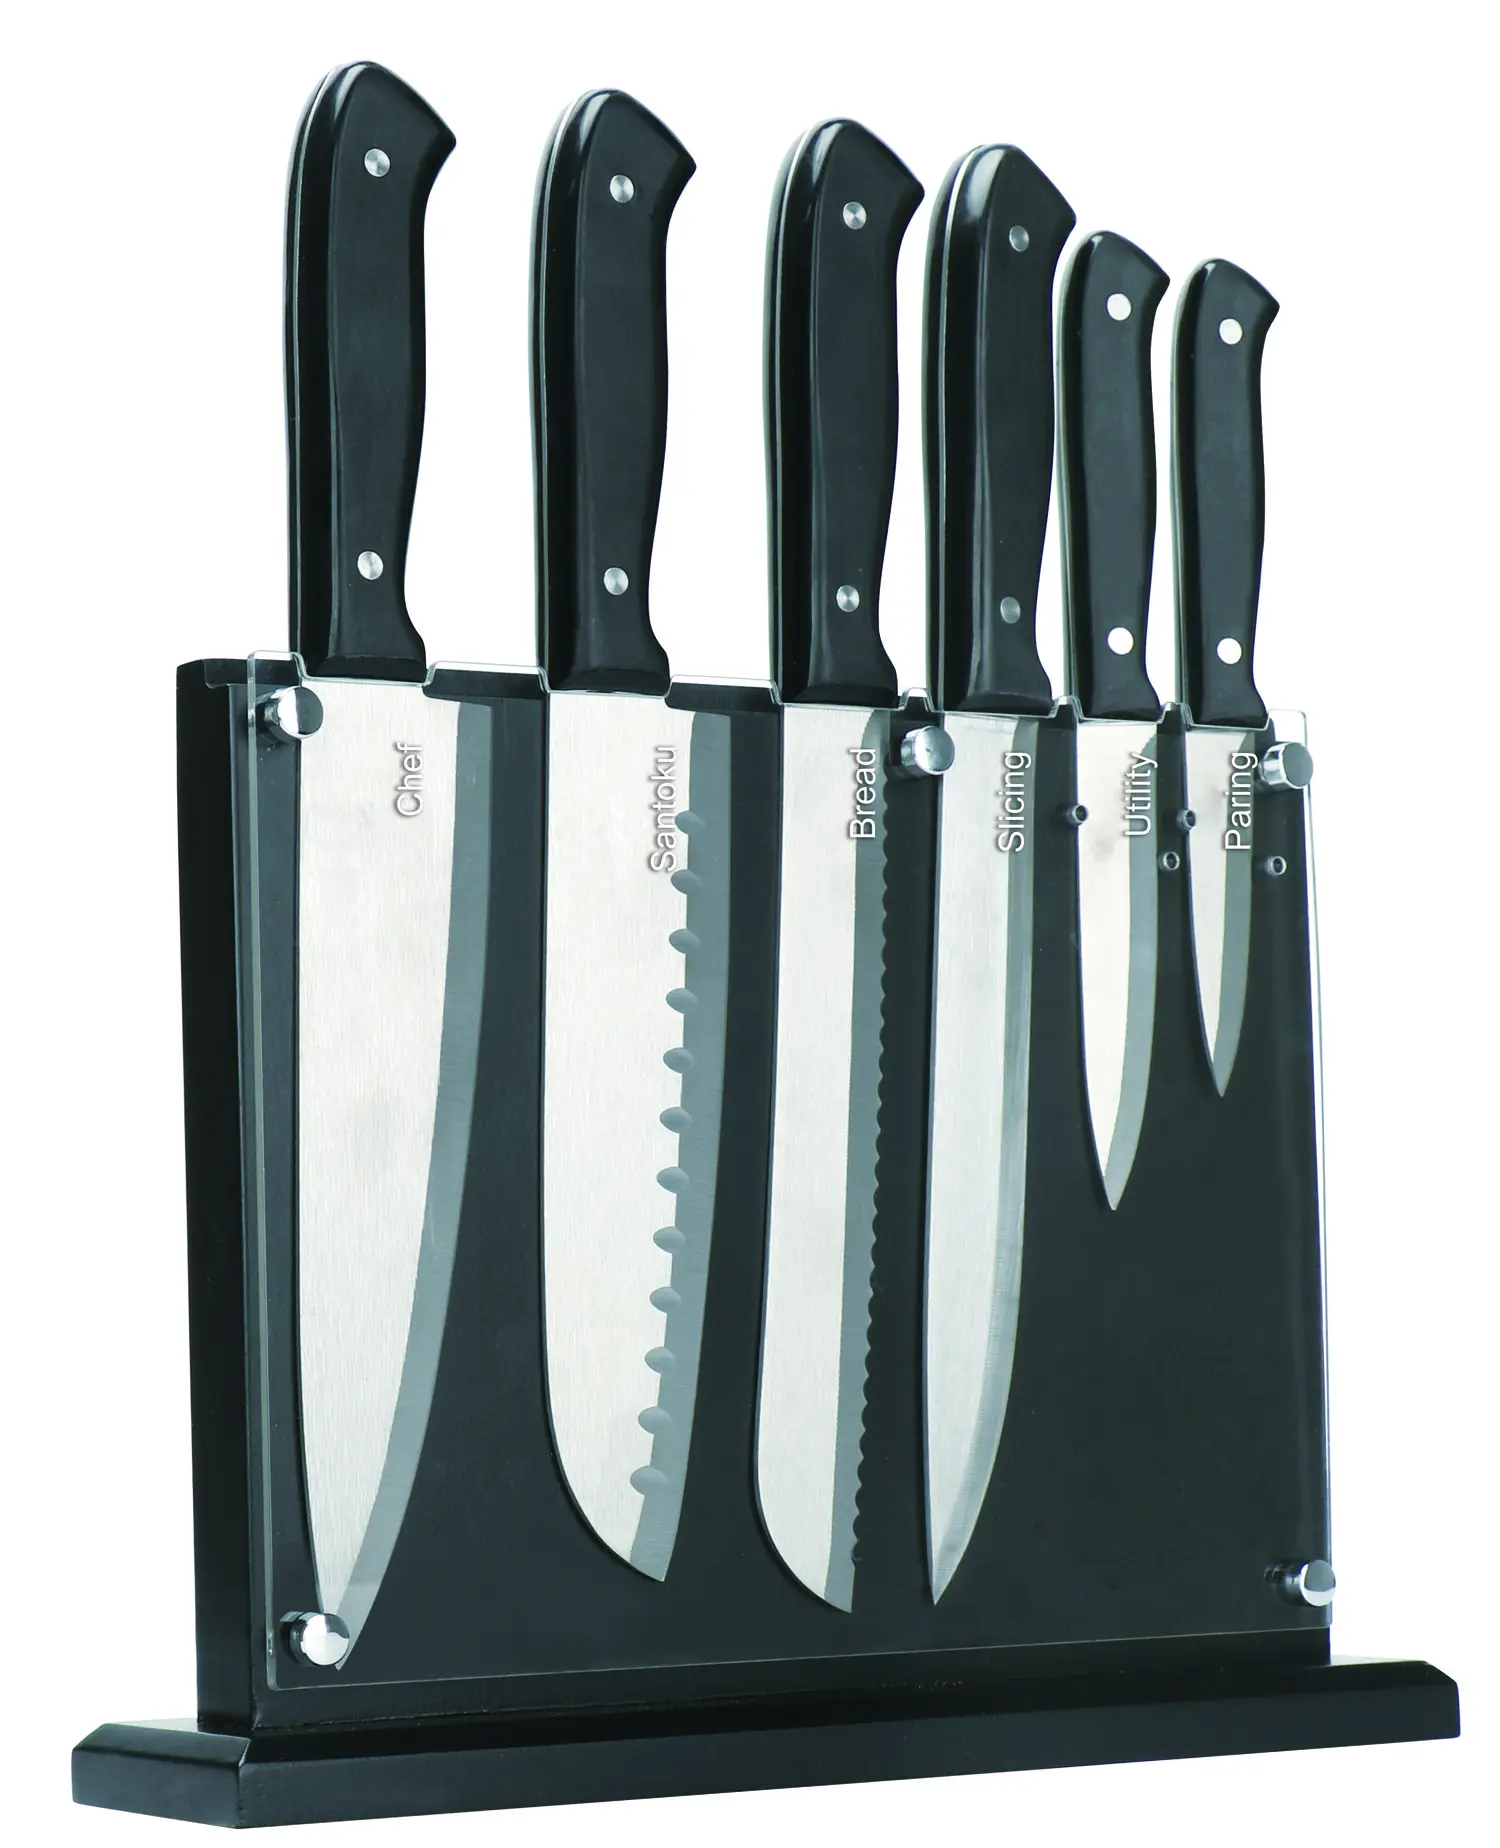 JINYU Set pisau tang penuh baja tahan karat, 7 buah Set pisau memasak blok kayu akrilik yang dapat dilepas untuk pembersihan mudah